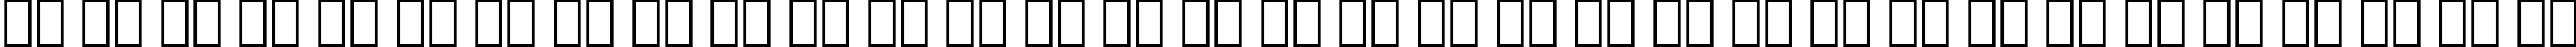 Пример написания русского алфавита шрифтом Amerigo Italic BT